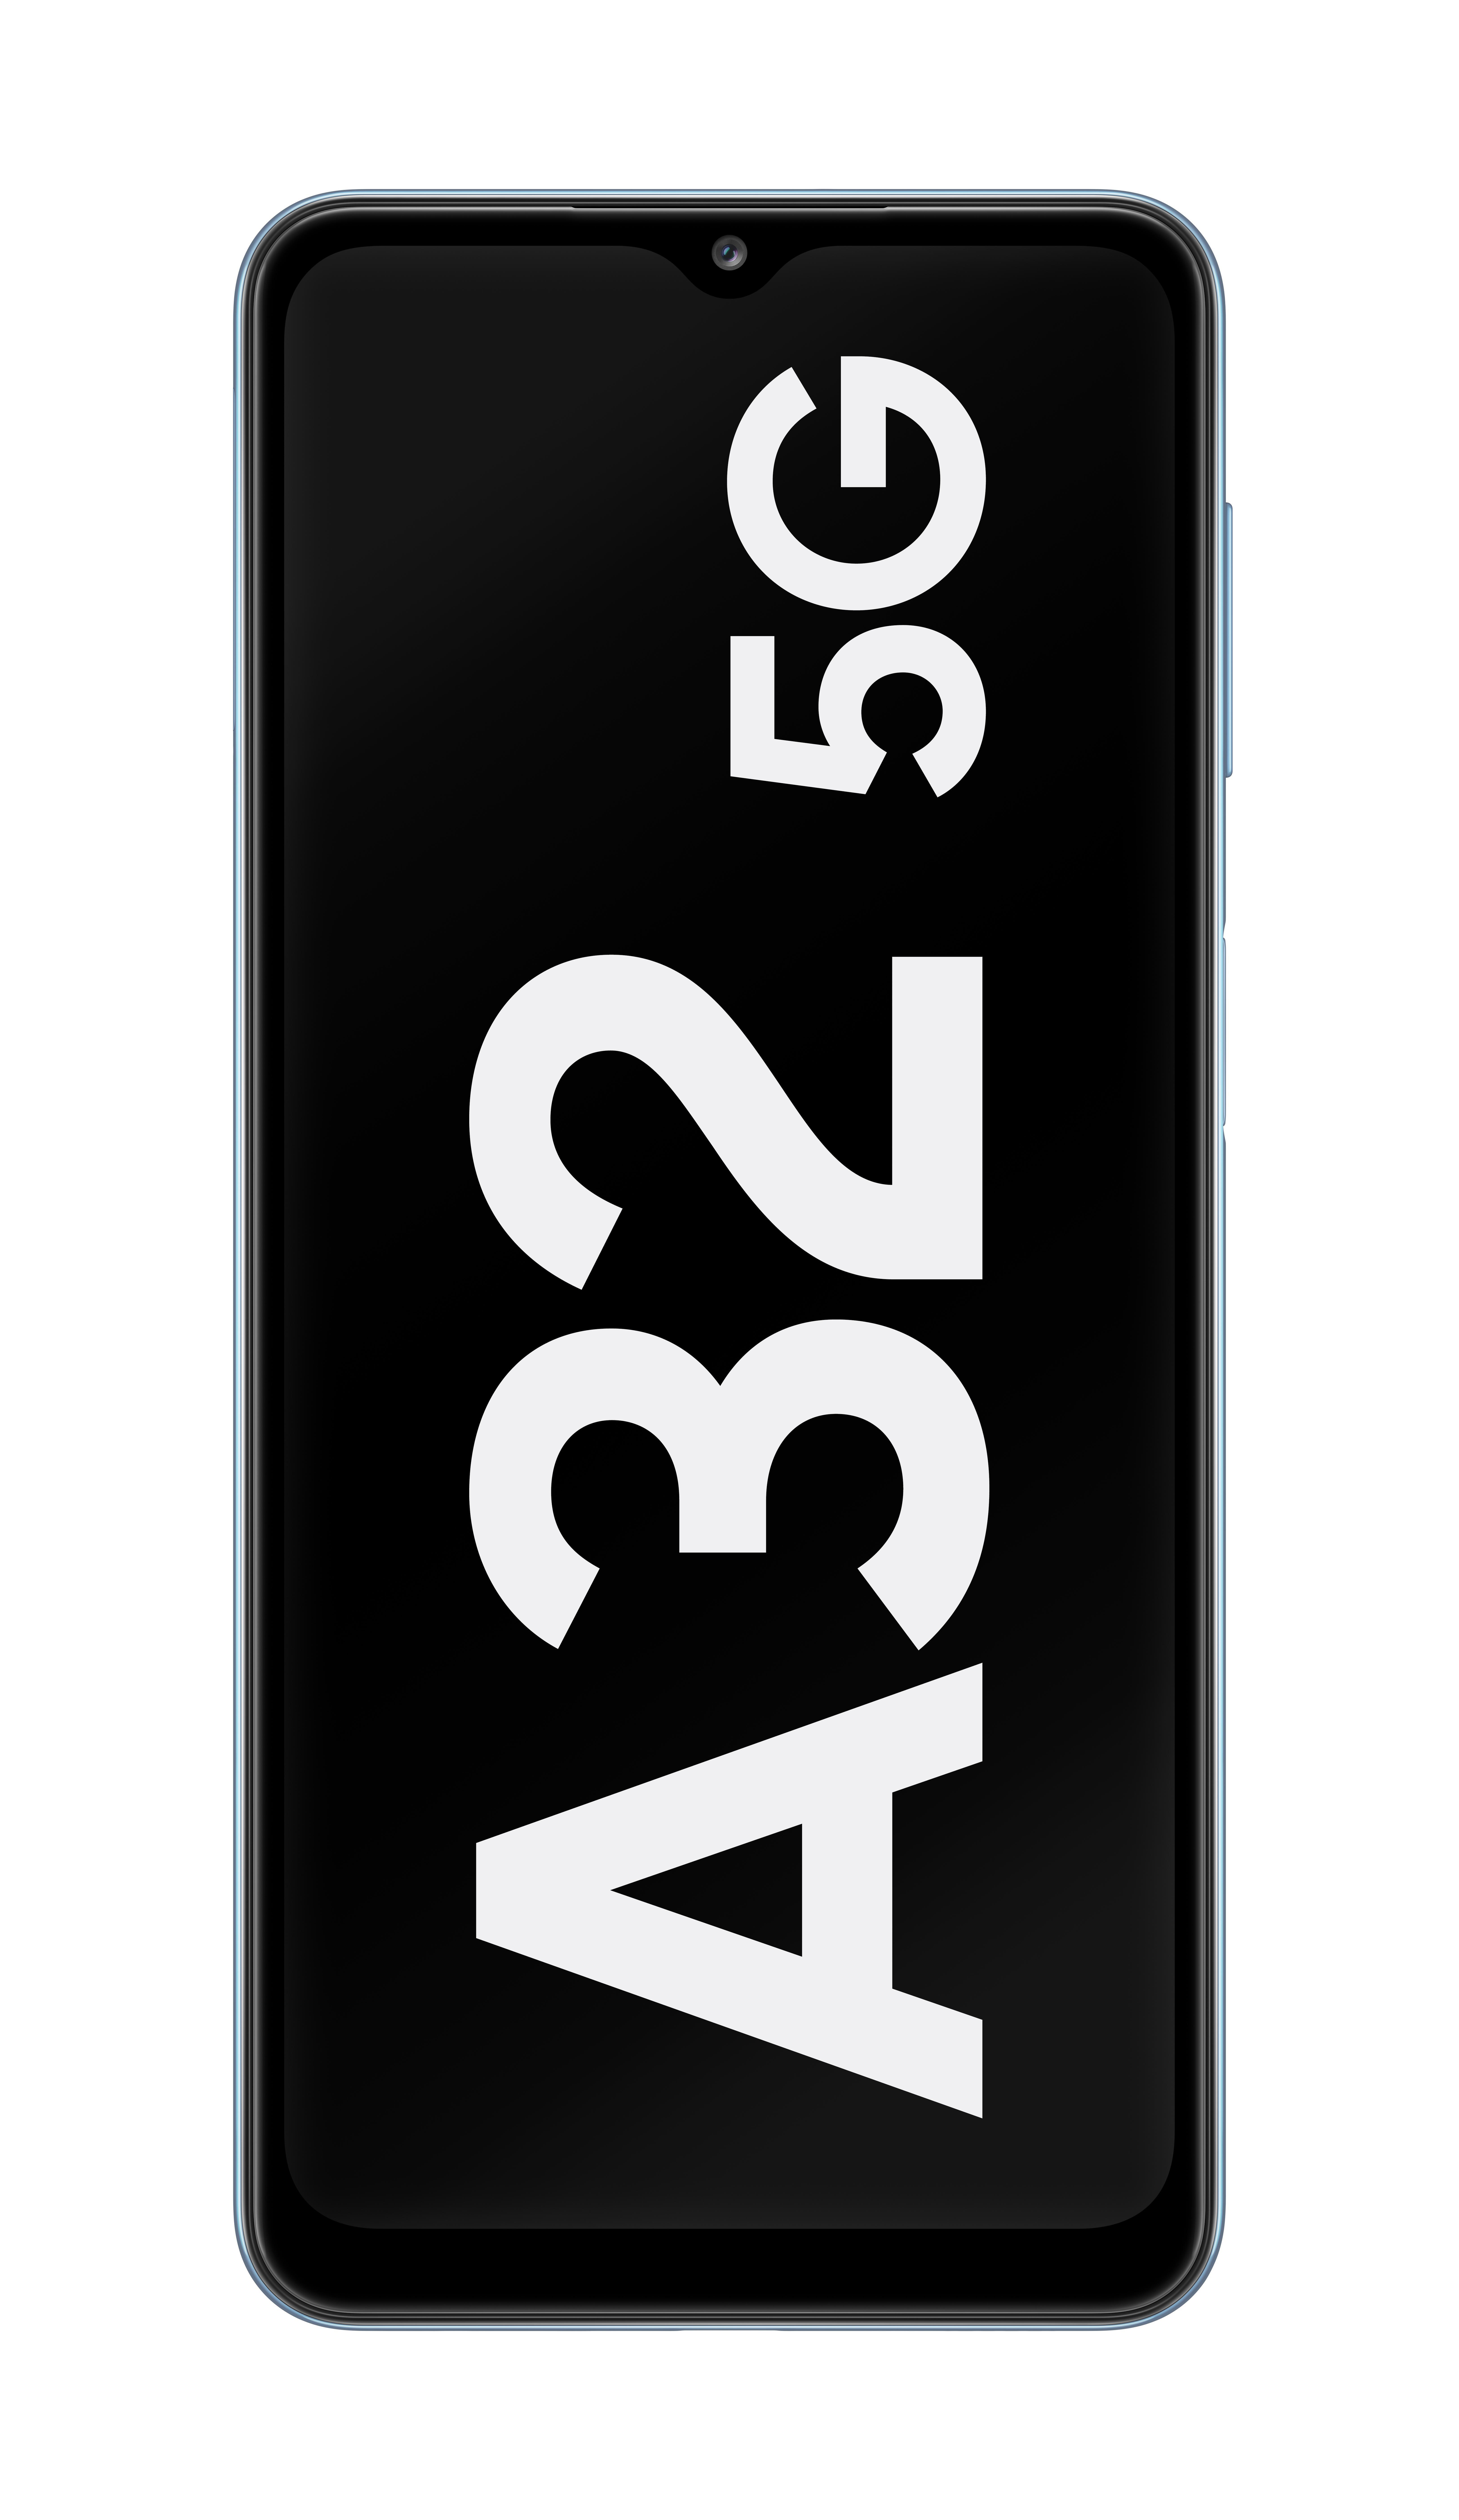 SAMSUNG Galaxy Blau Dual A32 GB 128 5G SIM